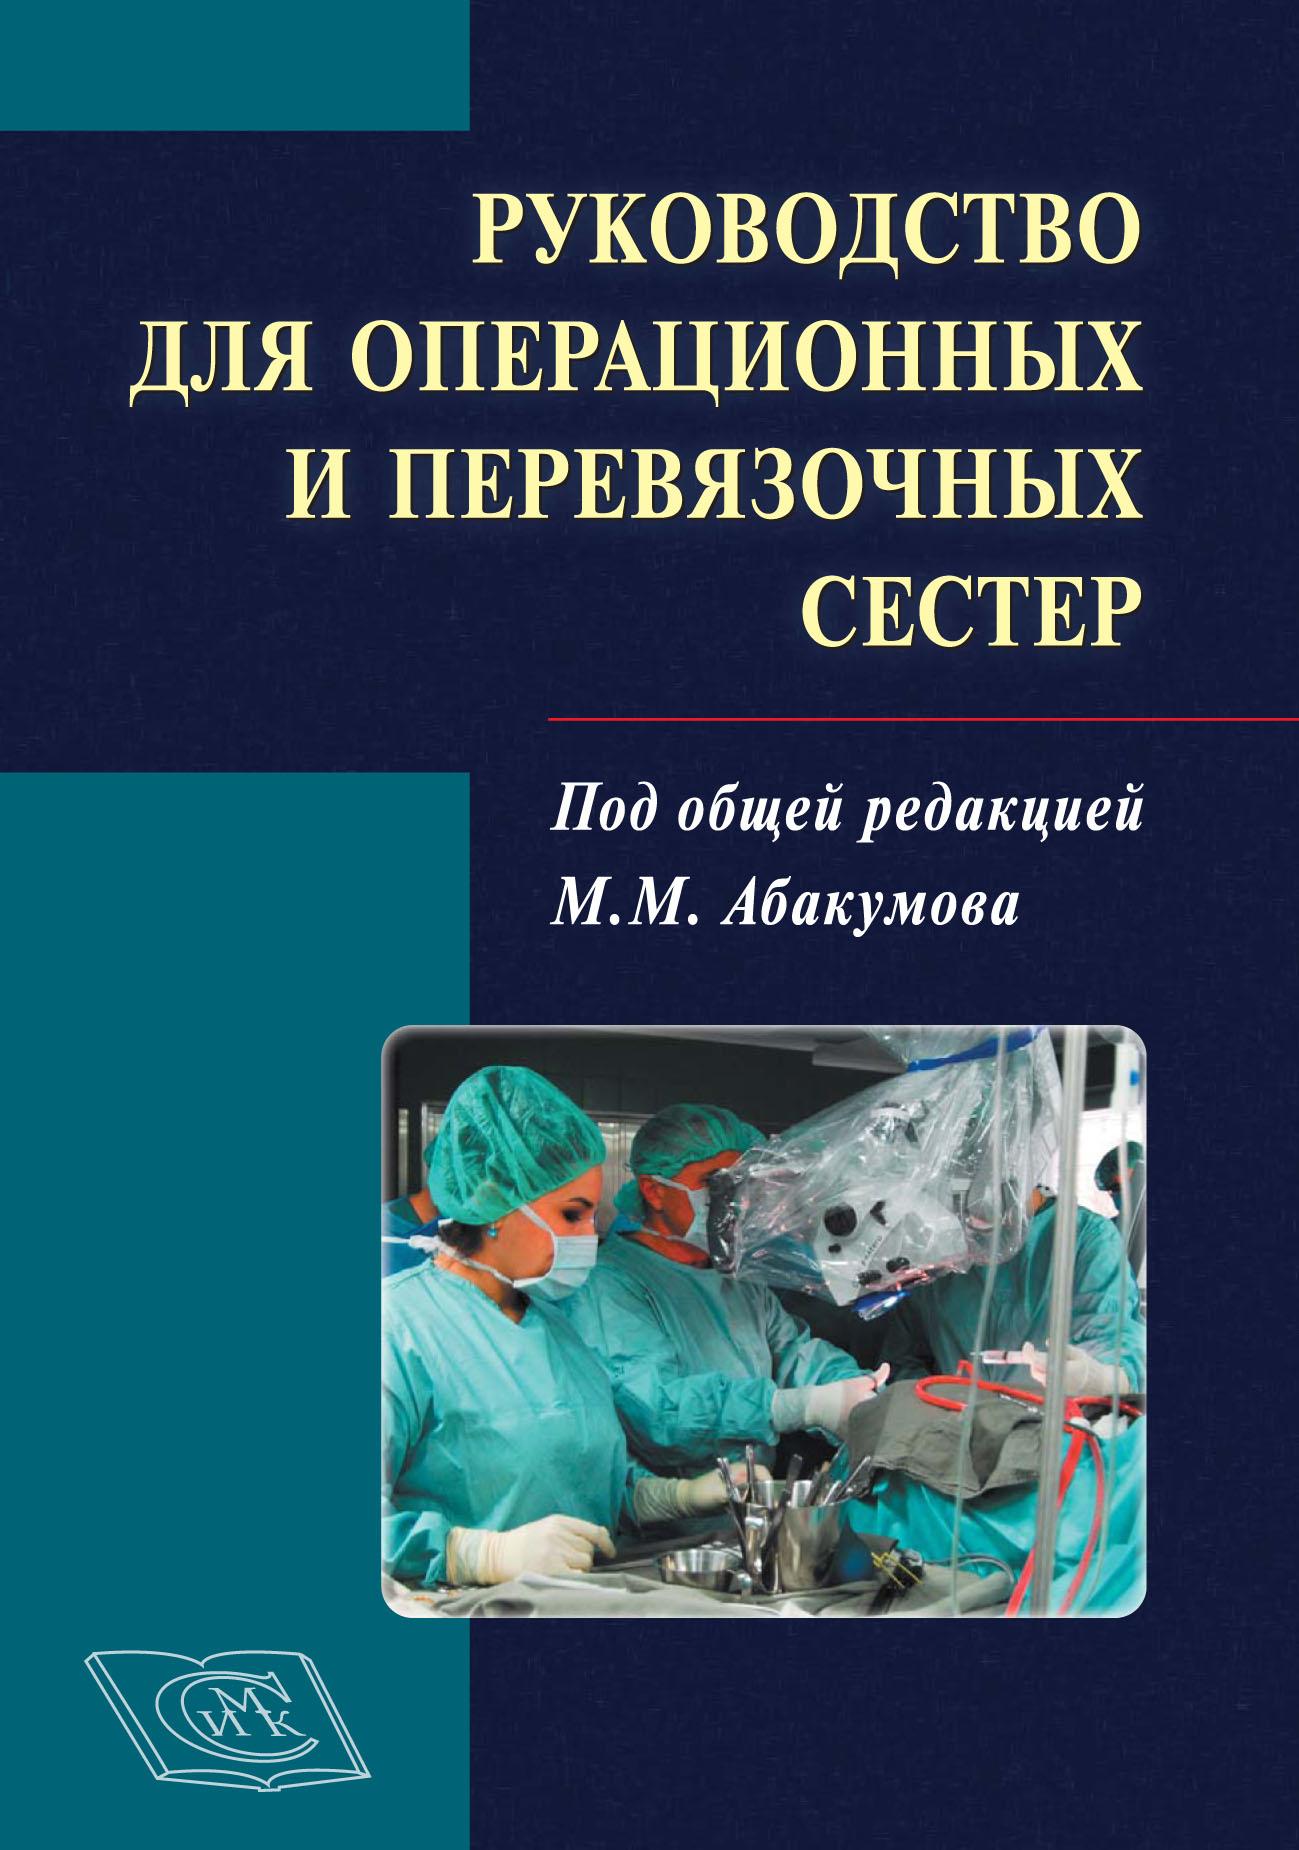 Руководство для операционных и перевязочных сестер. 2-е издание, дополненное и переработанное.